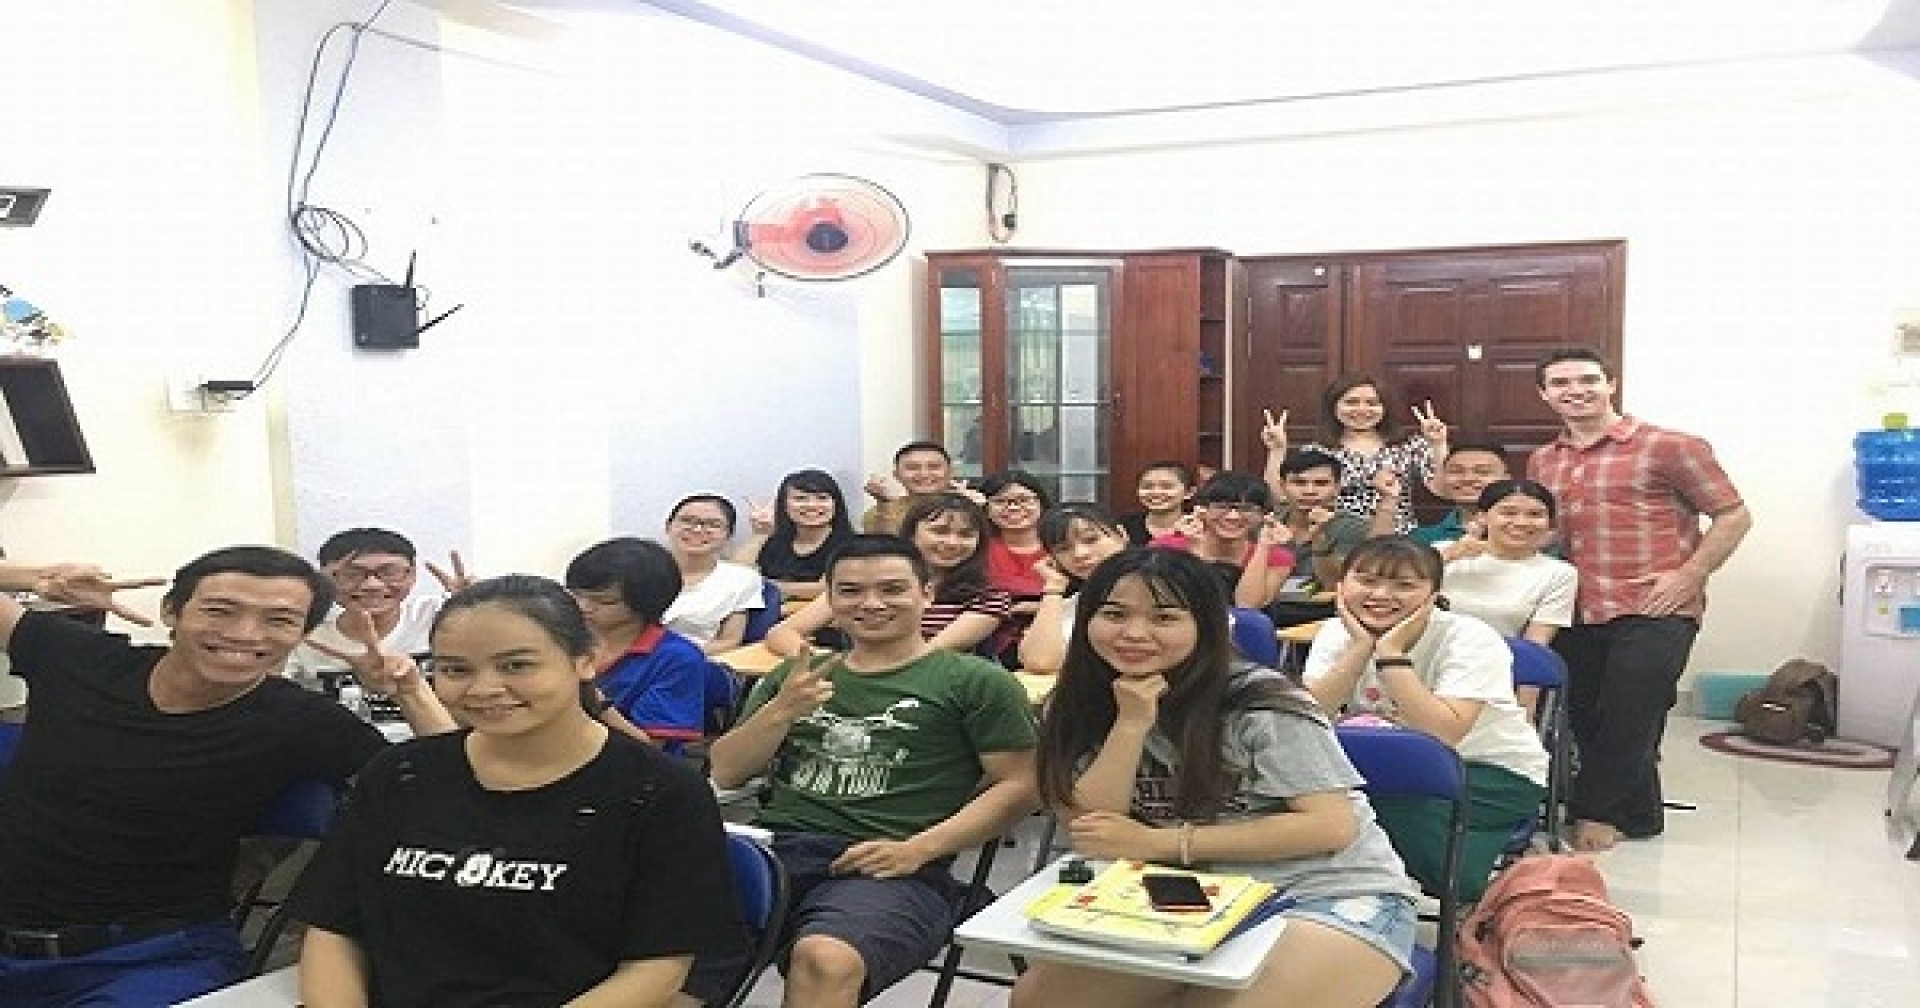 Bạn nghĩ học viên có nói tốt về lớp TOEIC – Speaking Ms Ngọc không?